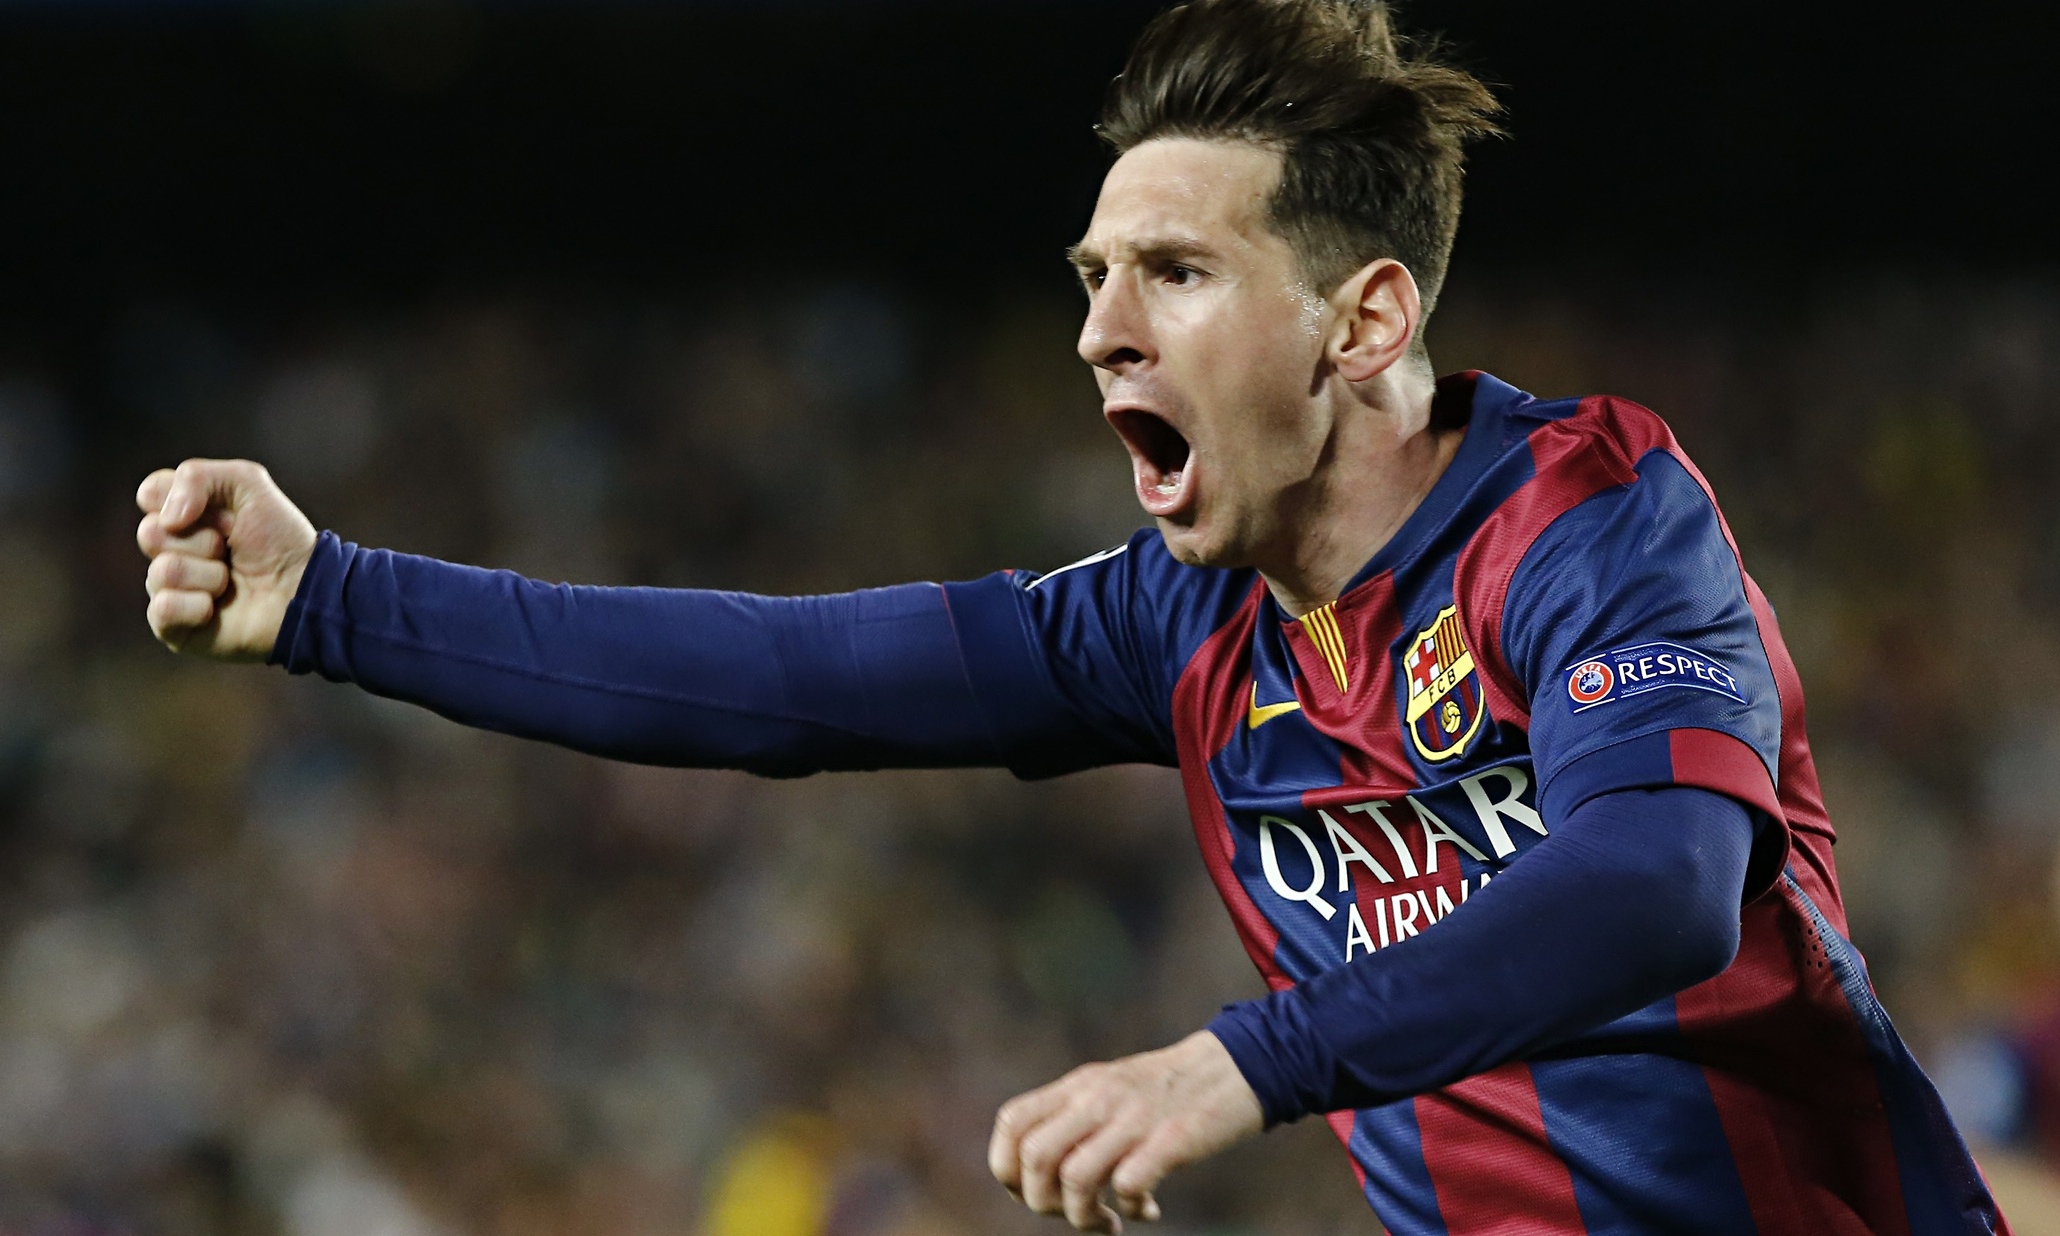 Sampaoli defiende a Messi ante críticas de los argentinos